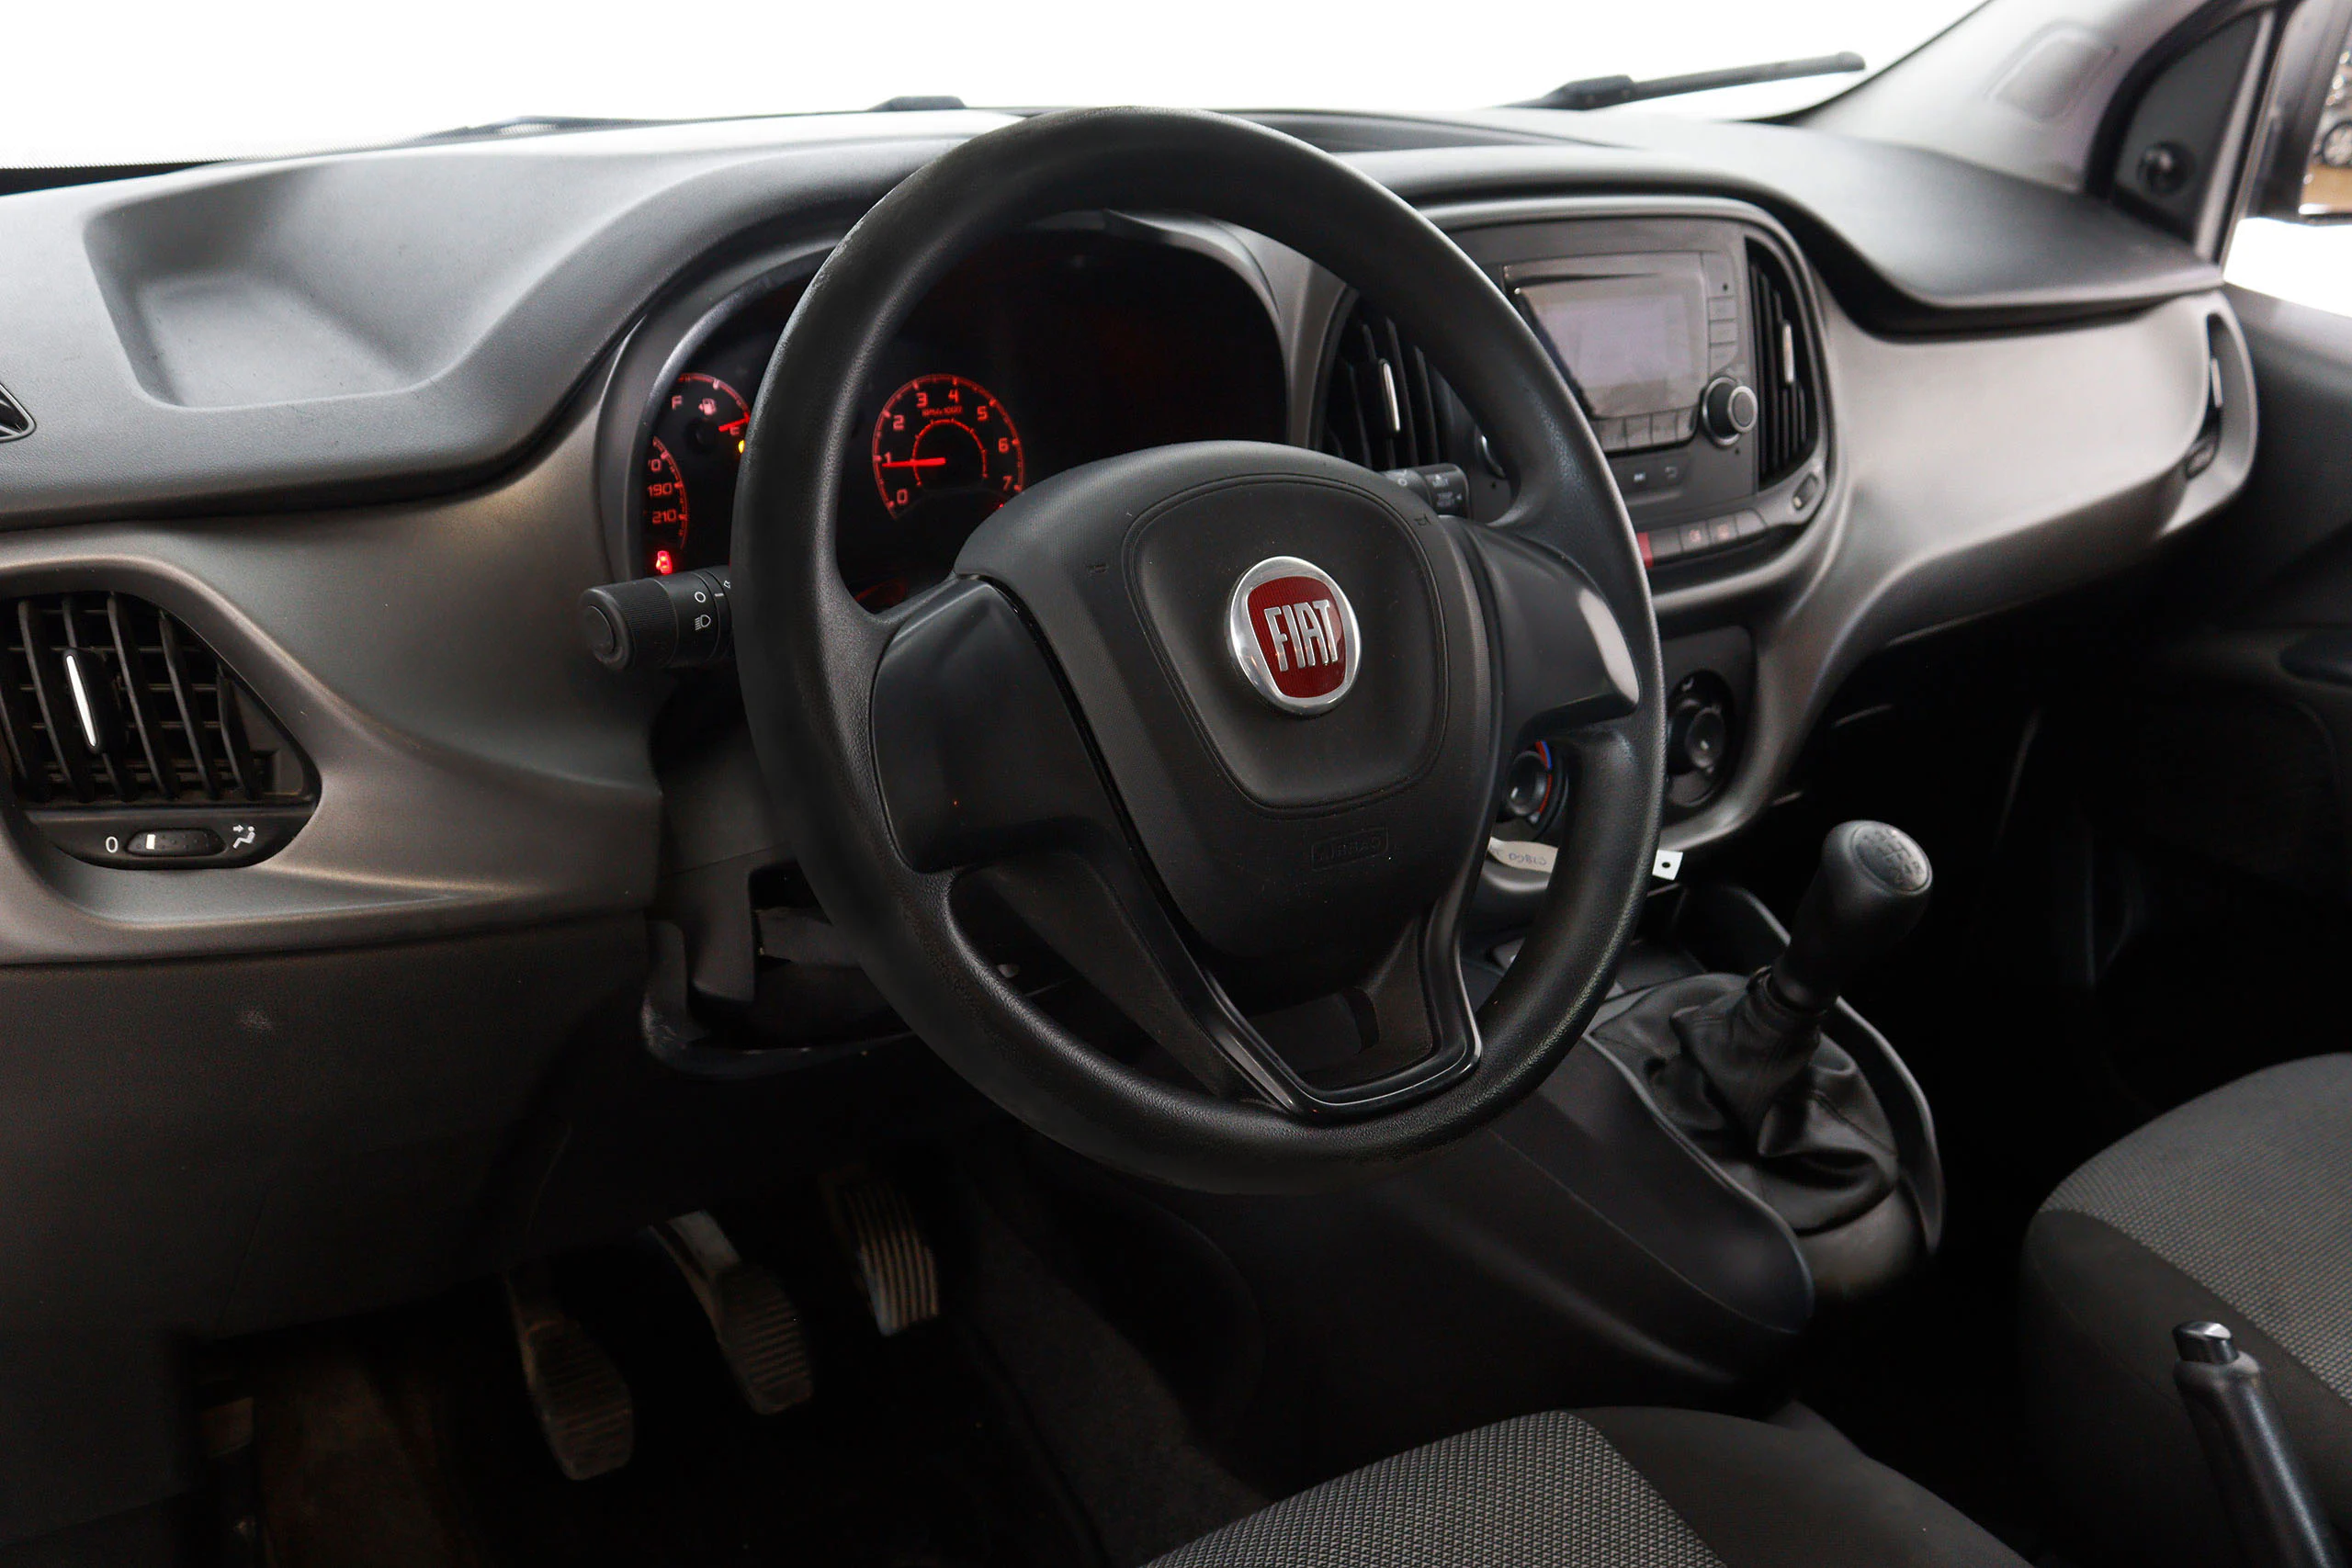 Fiat Doblo 1.3 MultiJet Panorama 90cv 5P # IVA DEDUCIBLE - Foto 14